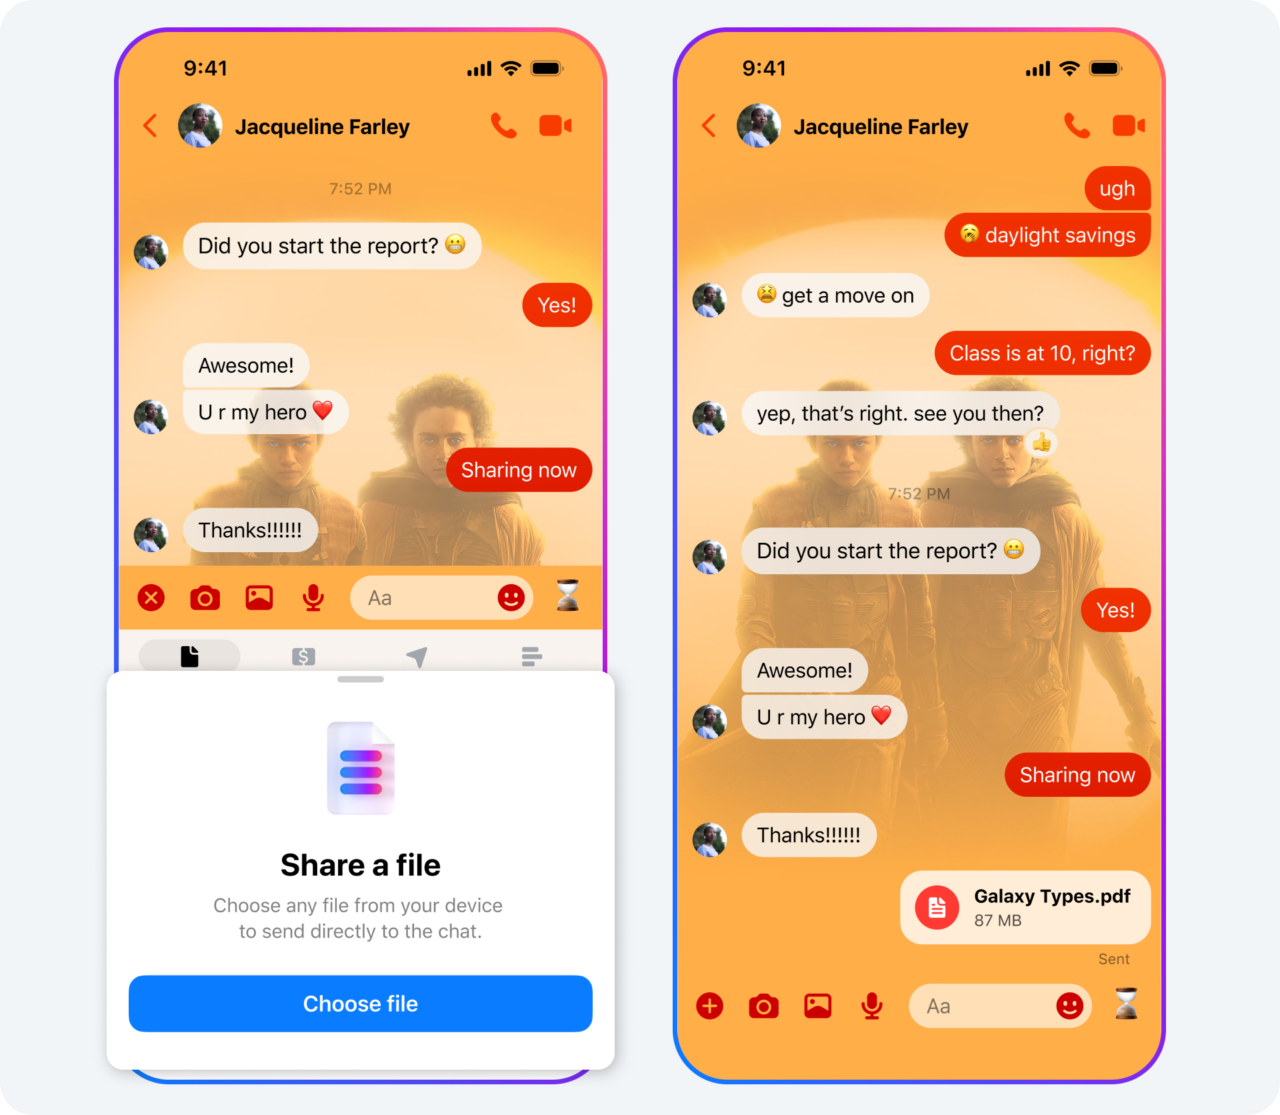 Zrzut ekranu dwóch interfejsów aplikacji Messenger do wysyłania wiadomości z okienkami czatu pomiędzy użytkownikiem a osobą o imieniu Jacqueline Farley, z widocznymi wiadomościami tekstowymi oraz opcjami udostępniania plików.